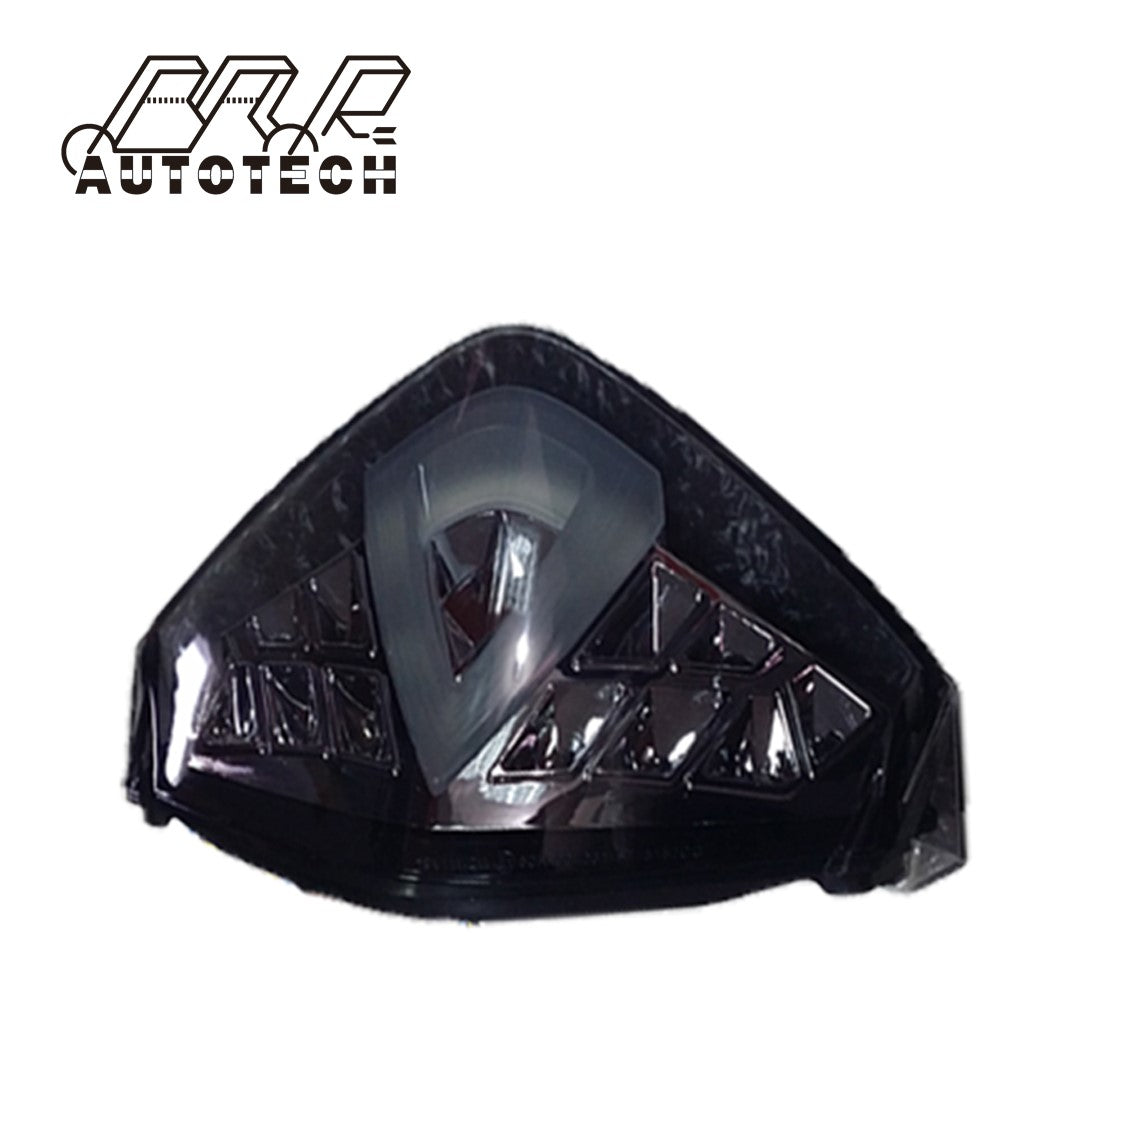 For KTM Adventure 1290 morotcycle integreted rear led light for brake lamp